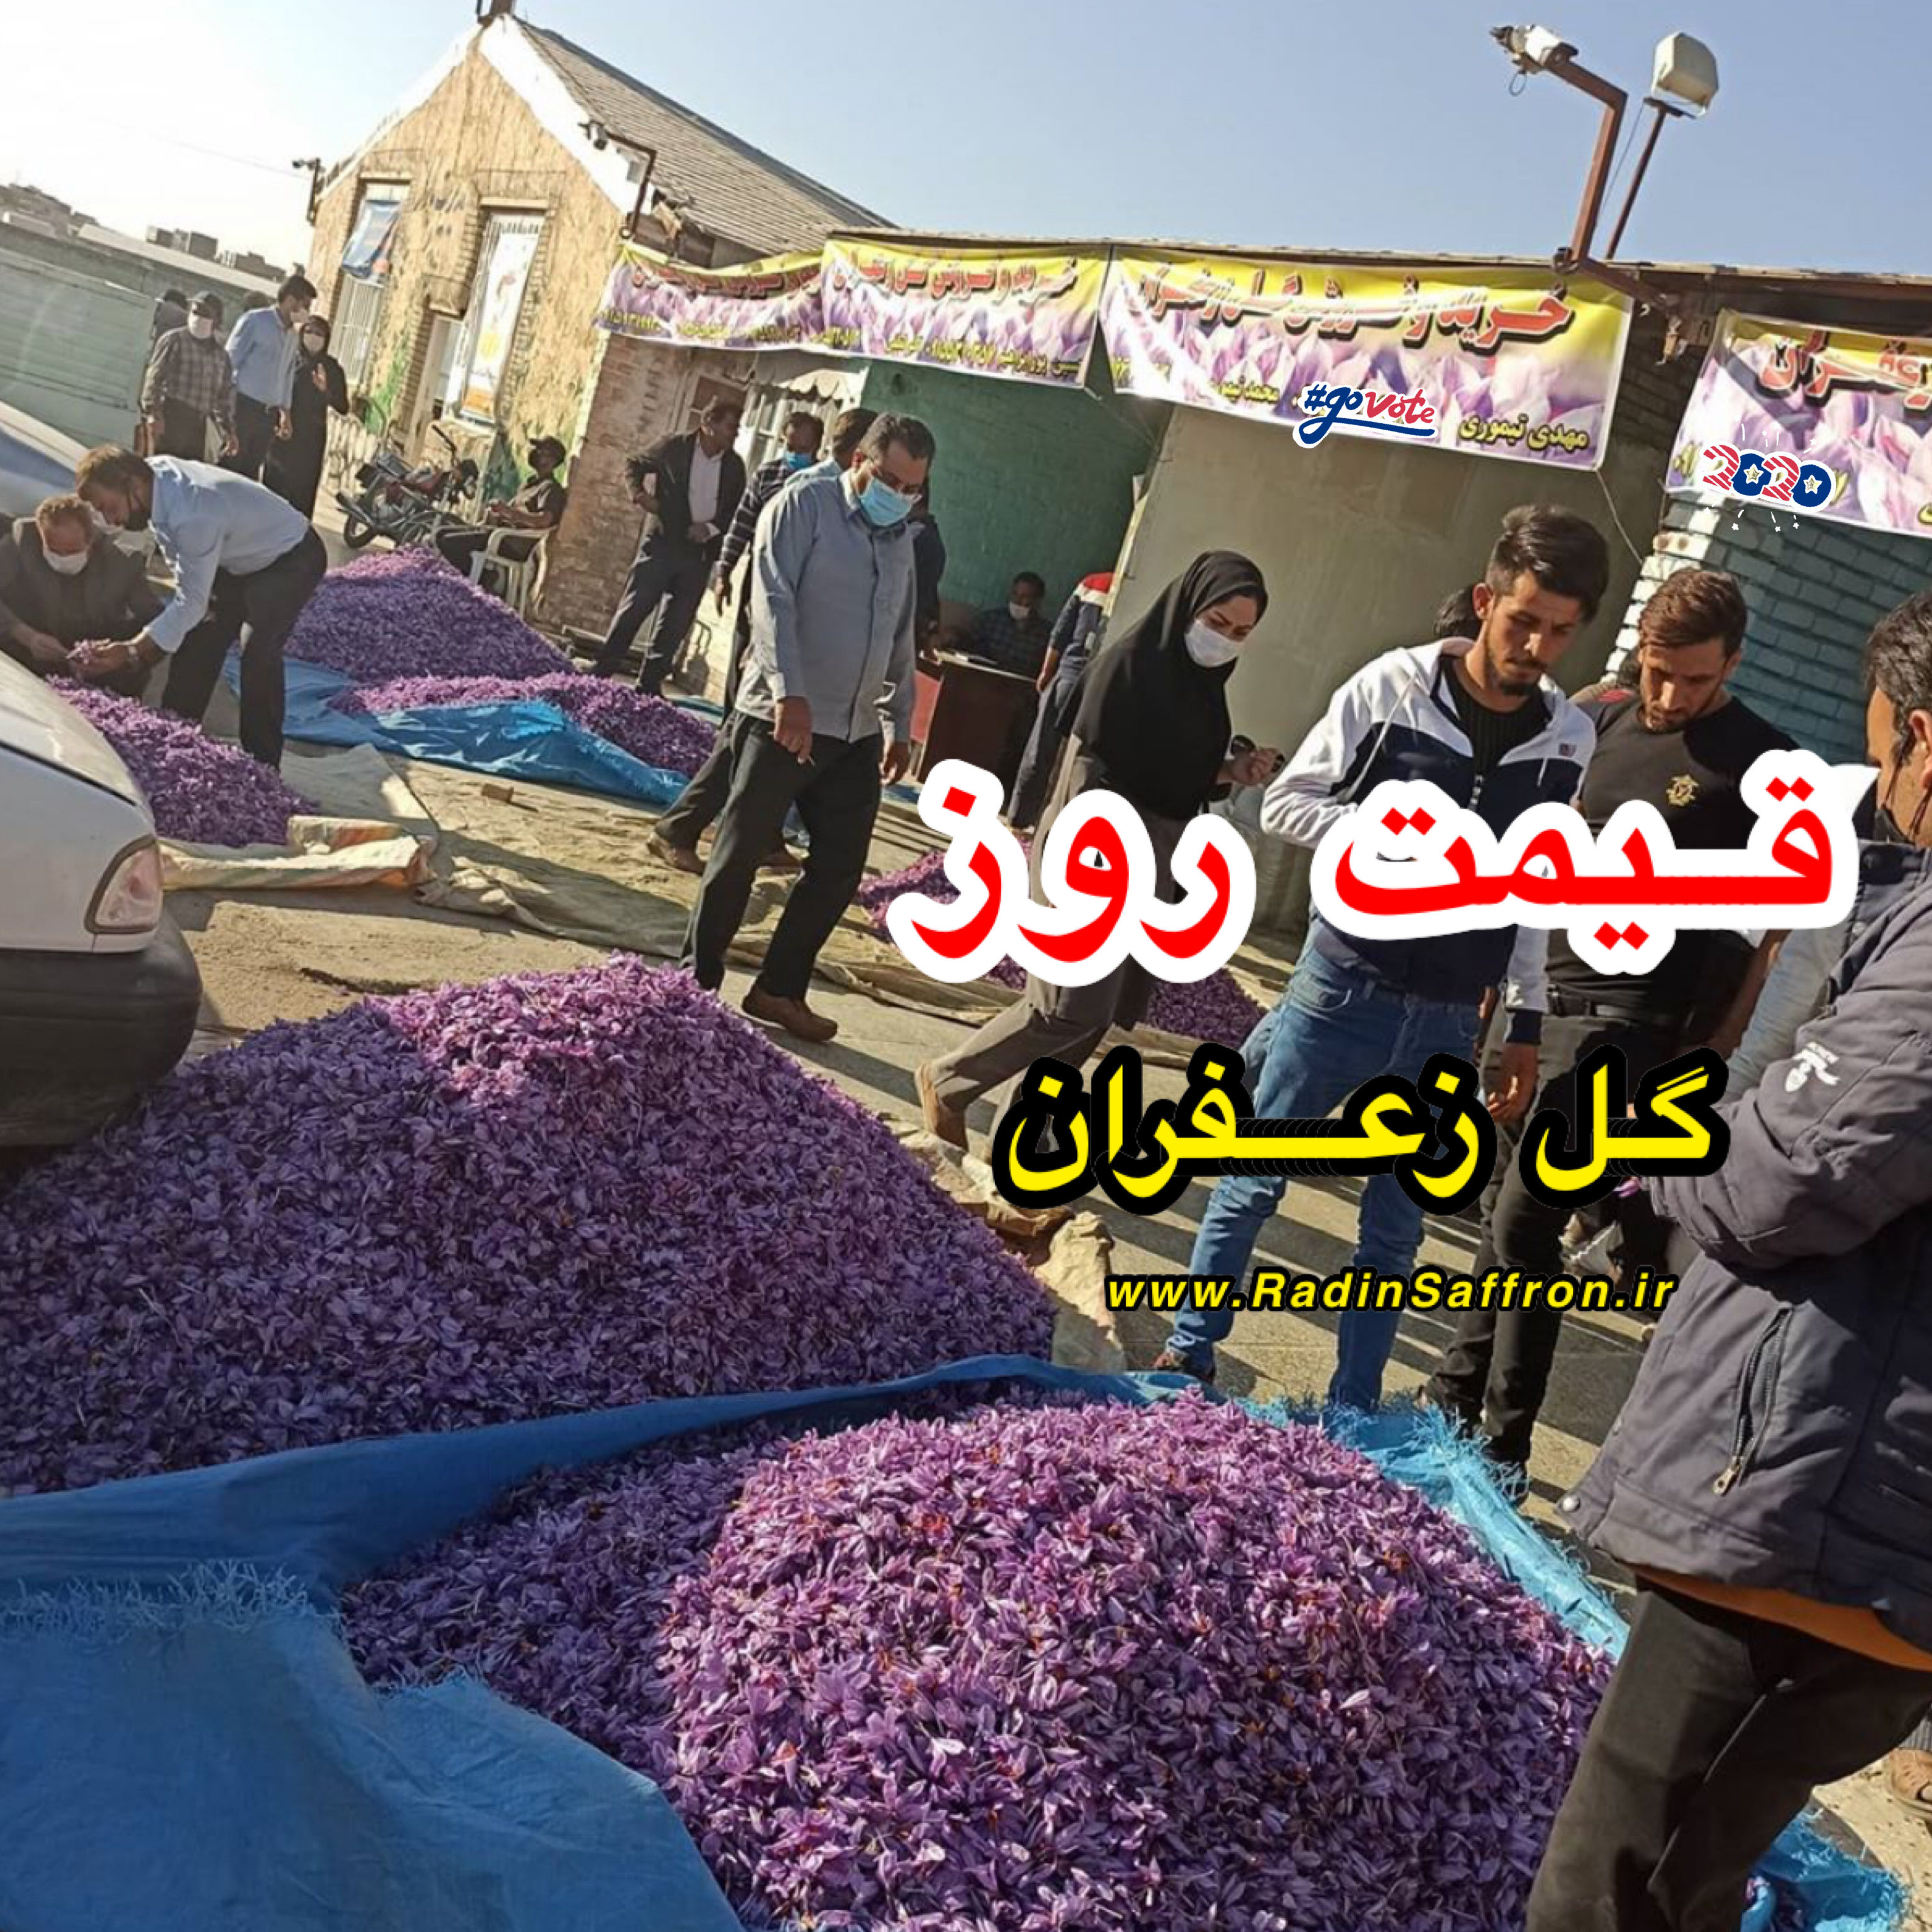 قیمت روز گل تازه زعفران | روز پنج شنبه ۱۵ آبان ماه ۱۳۹۹